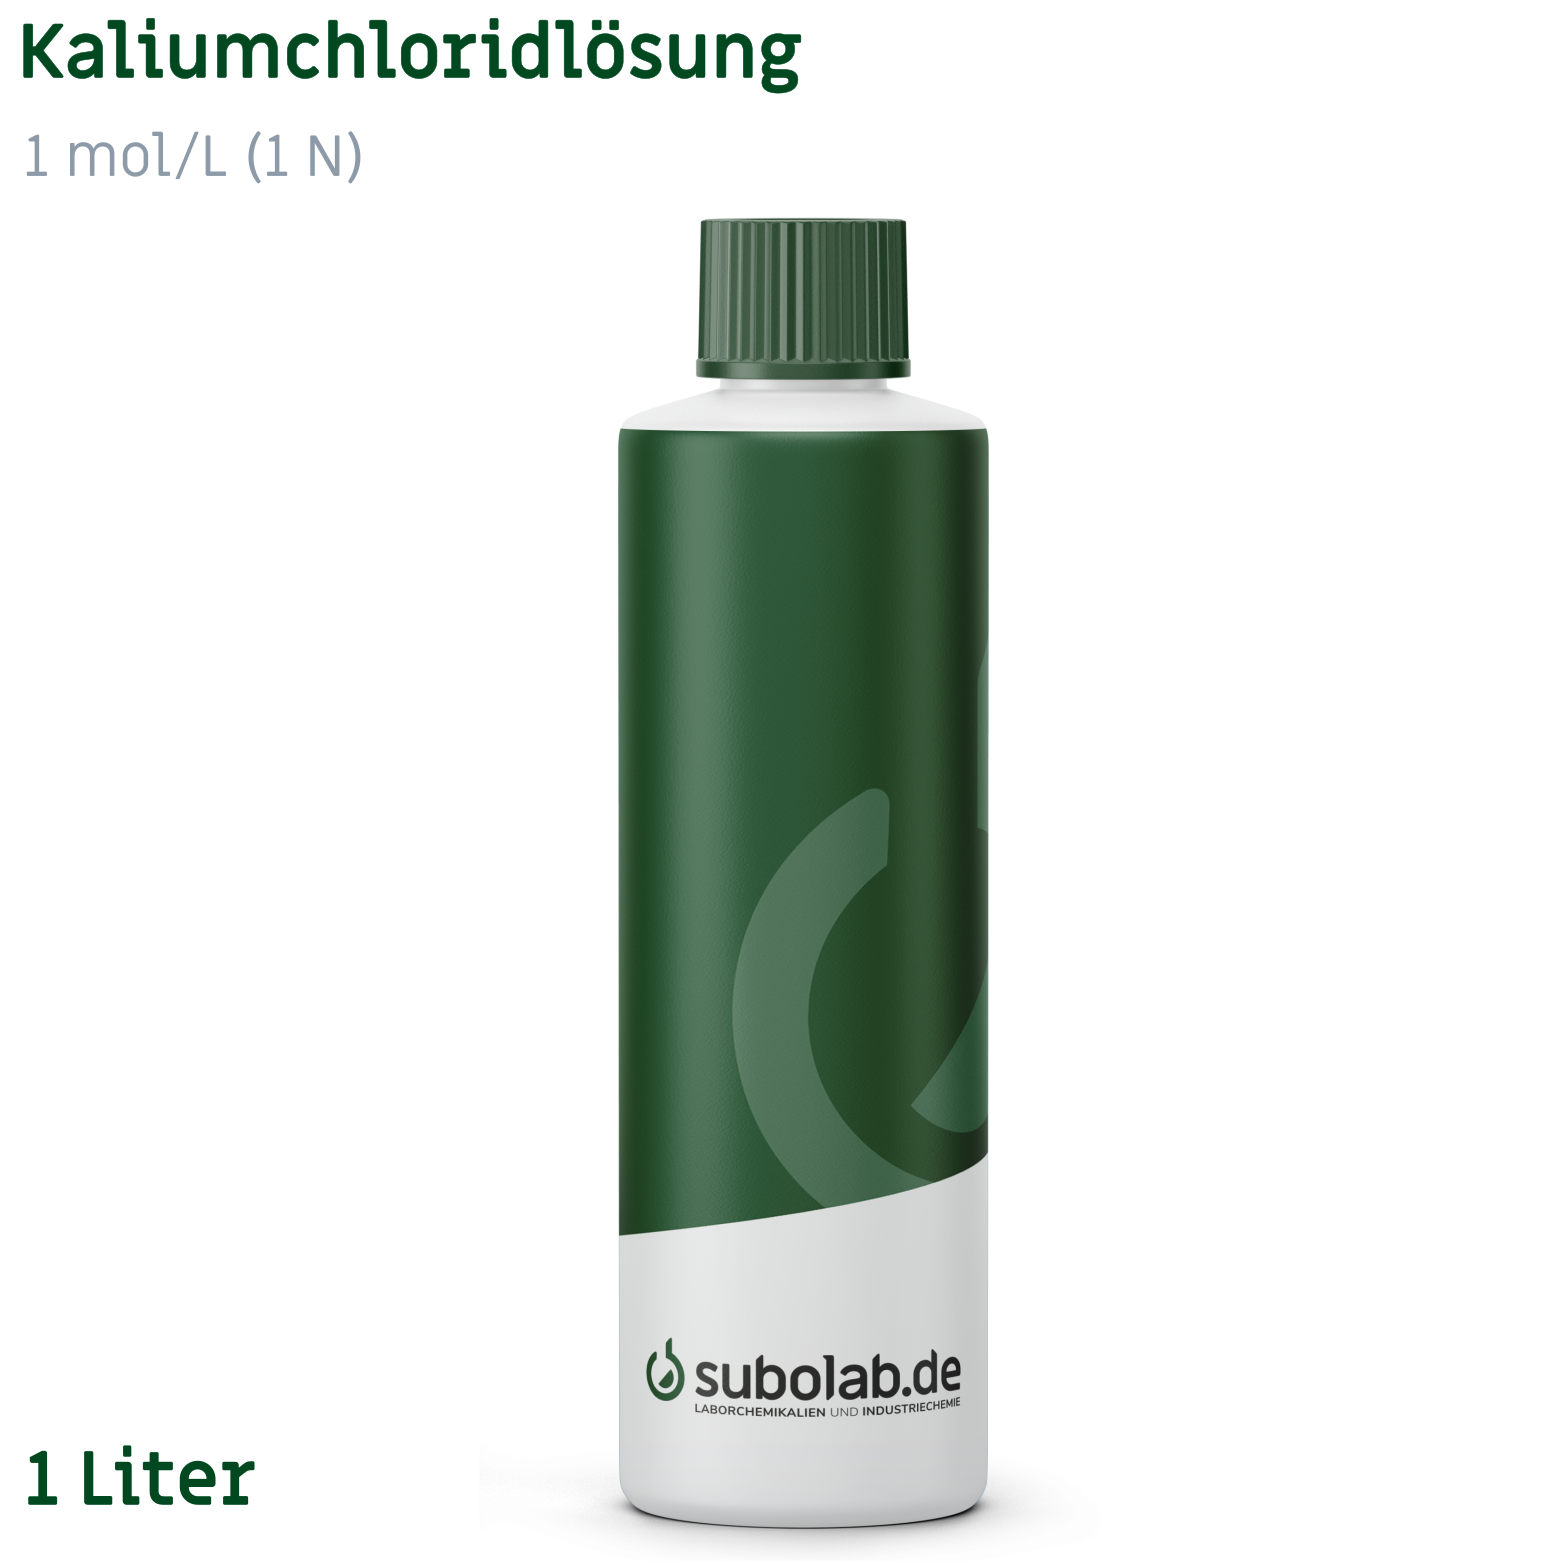 Bild von Kaliumchloridlösung 1 mol/L (1 N) (1 Liter)